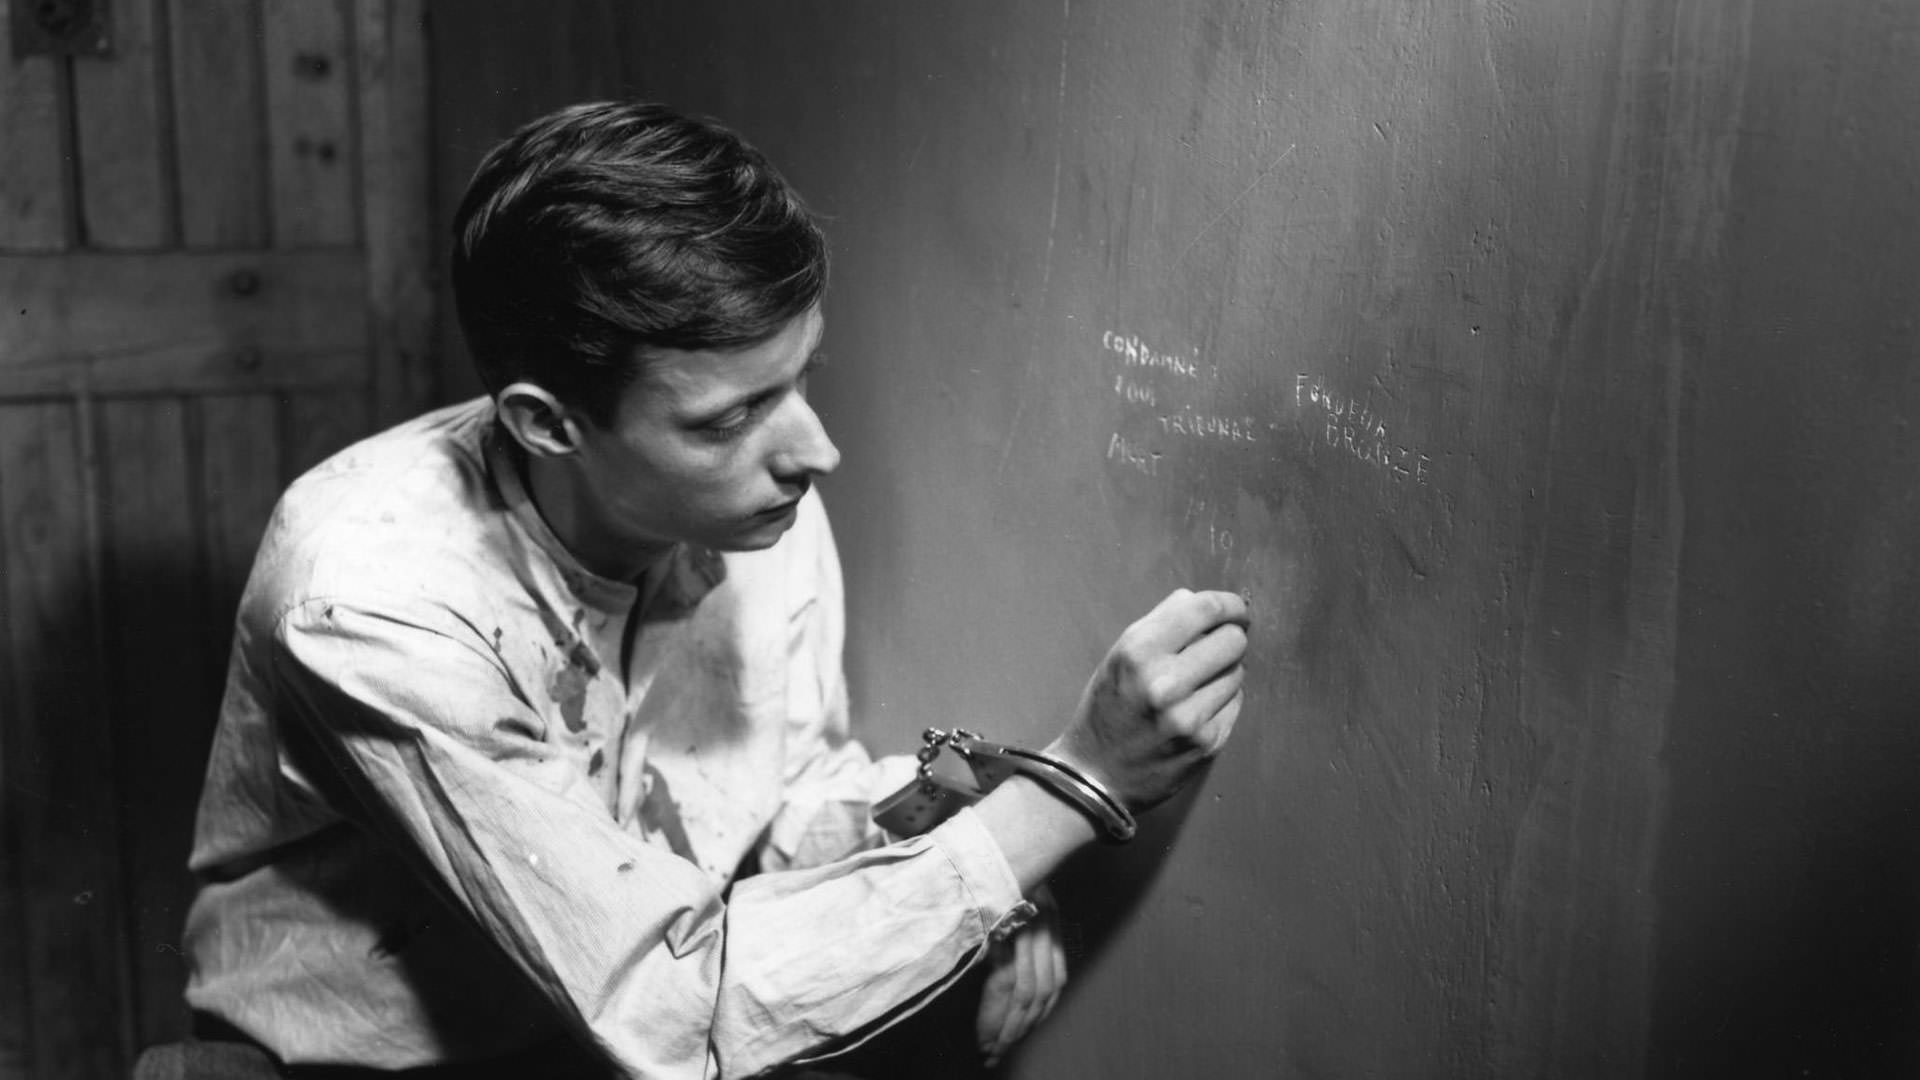 فرانسوا لتریه با دستان بسته در صحنه ای از فیلم مردی در حال فرار به کارگردانی روبر برسون روی دیوار یک سلول انزوا می نویسد.